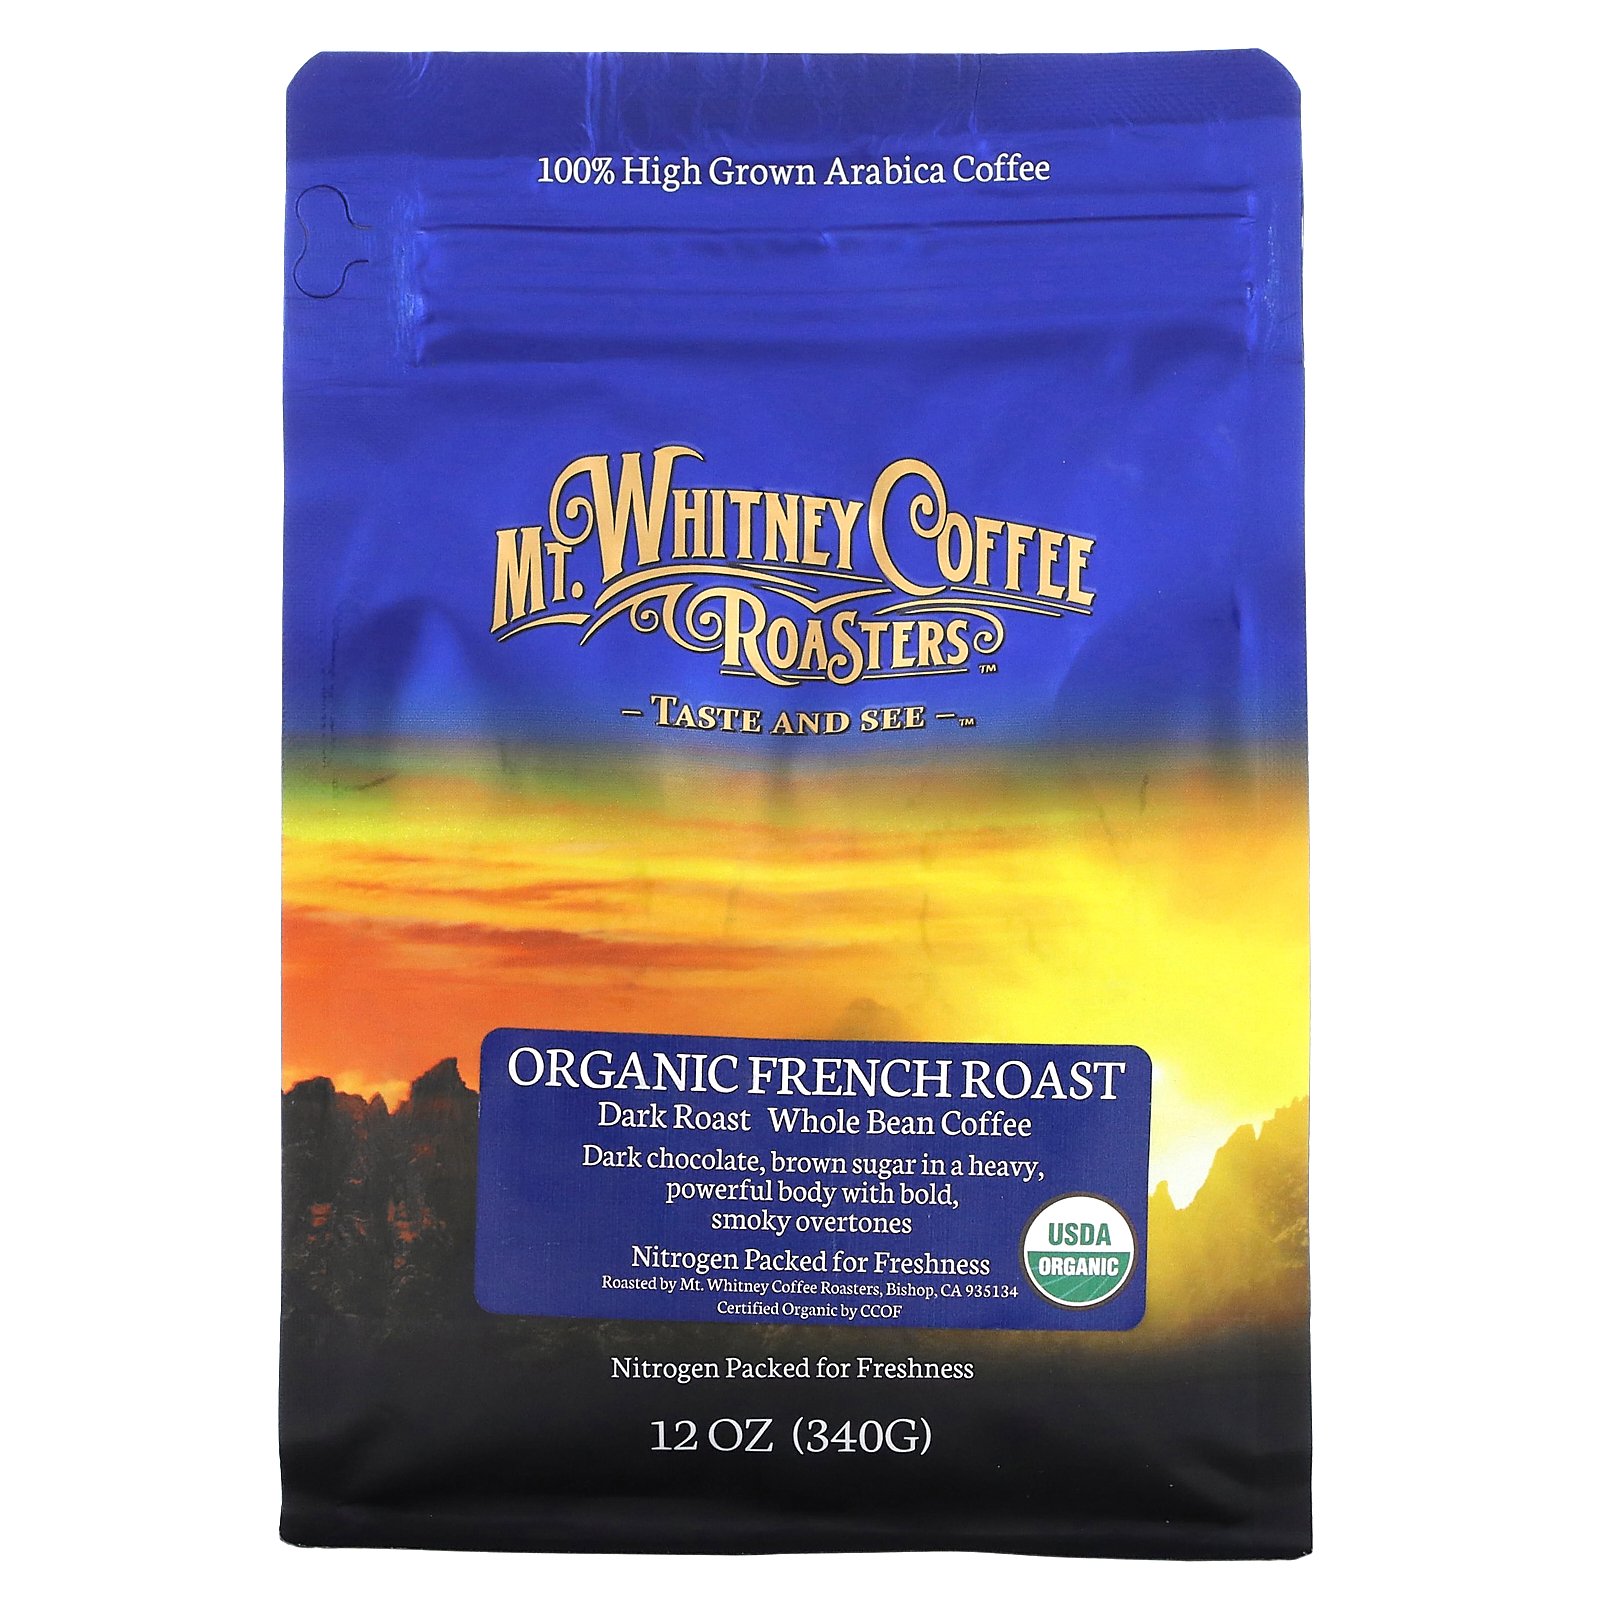 Mt. Whitney Coffee Roasters オーガニック フレンチロースト  マウントホイットニーコーヒーロースター ダークロースト コーヒー豆 アラビカコーヒー100% 340g